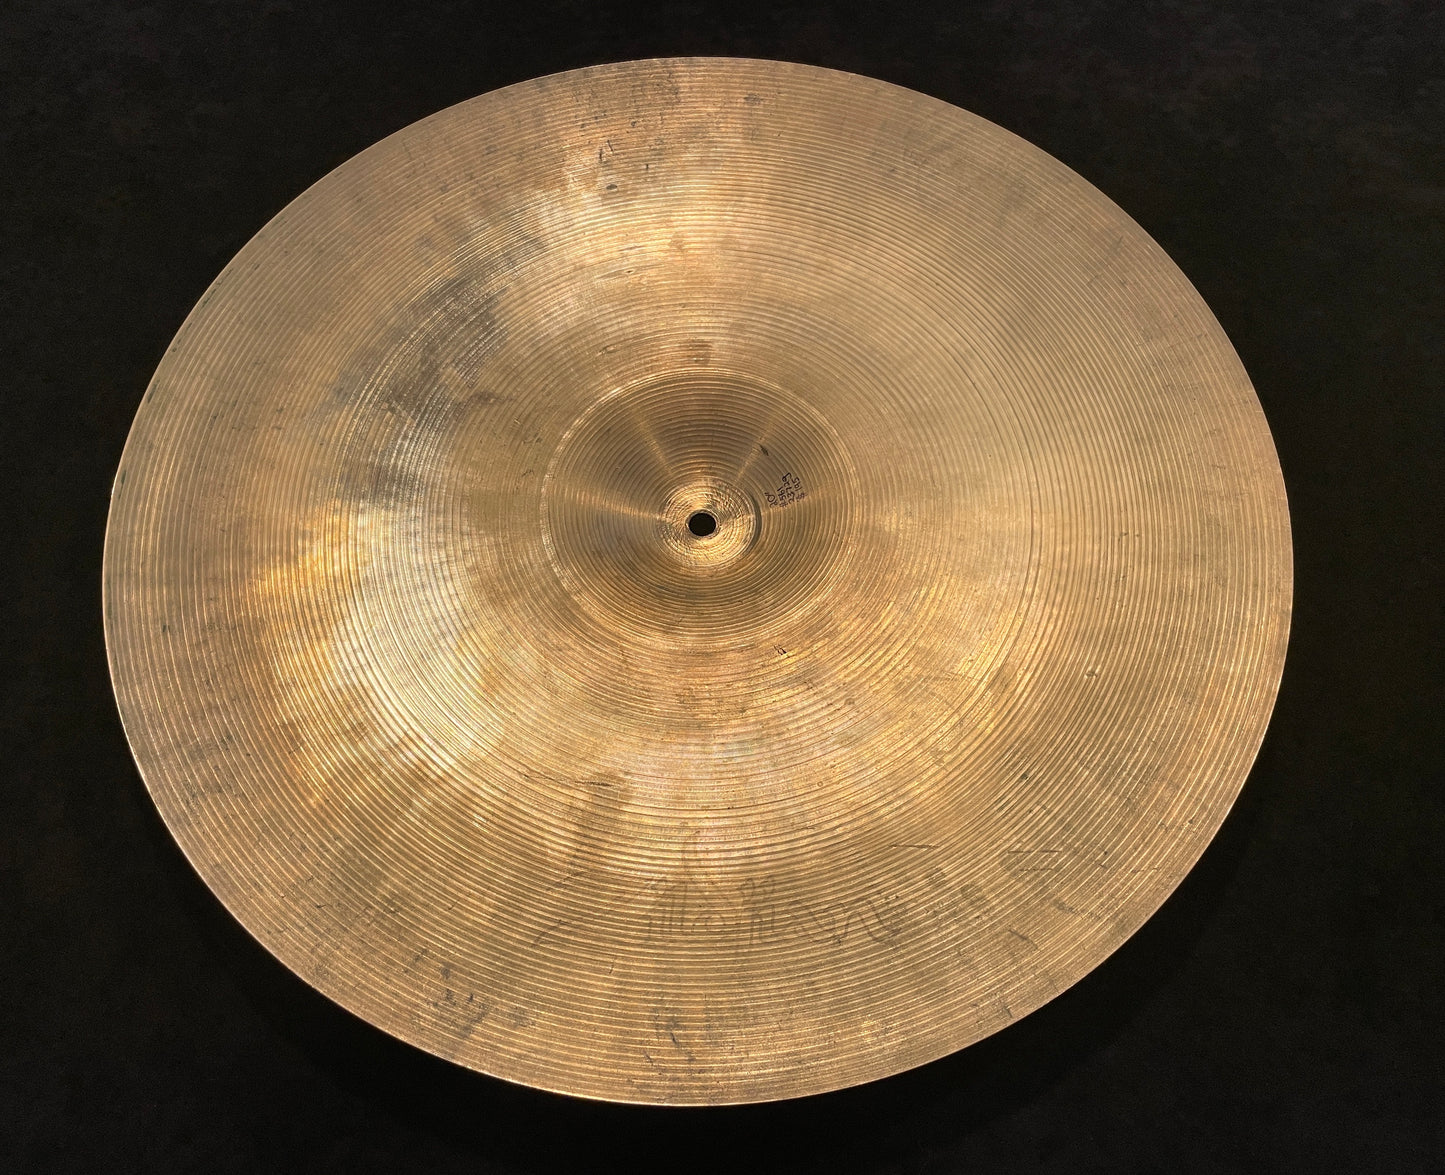 20" Zildjian A 1970s Ride Cymbal 2372g #561 *Video Demo*